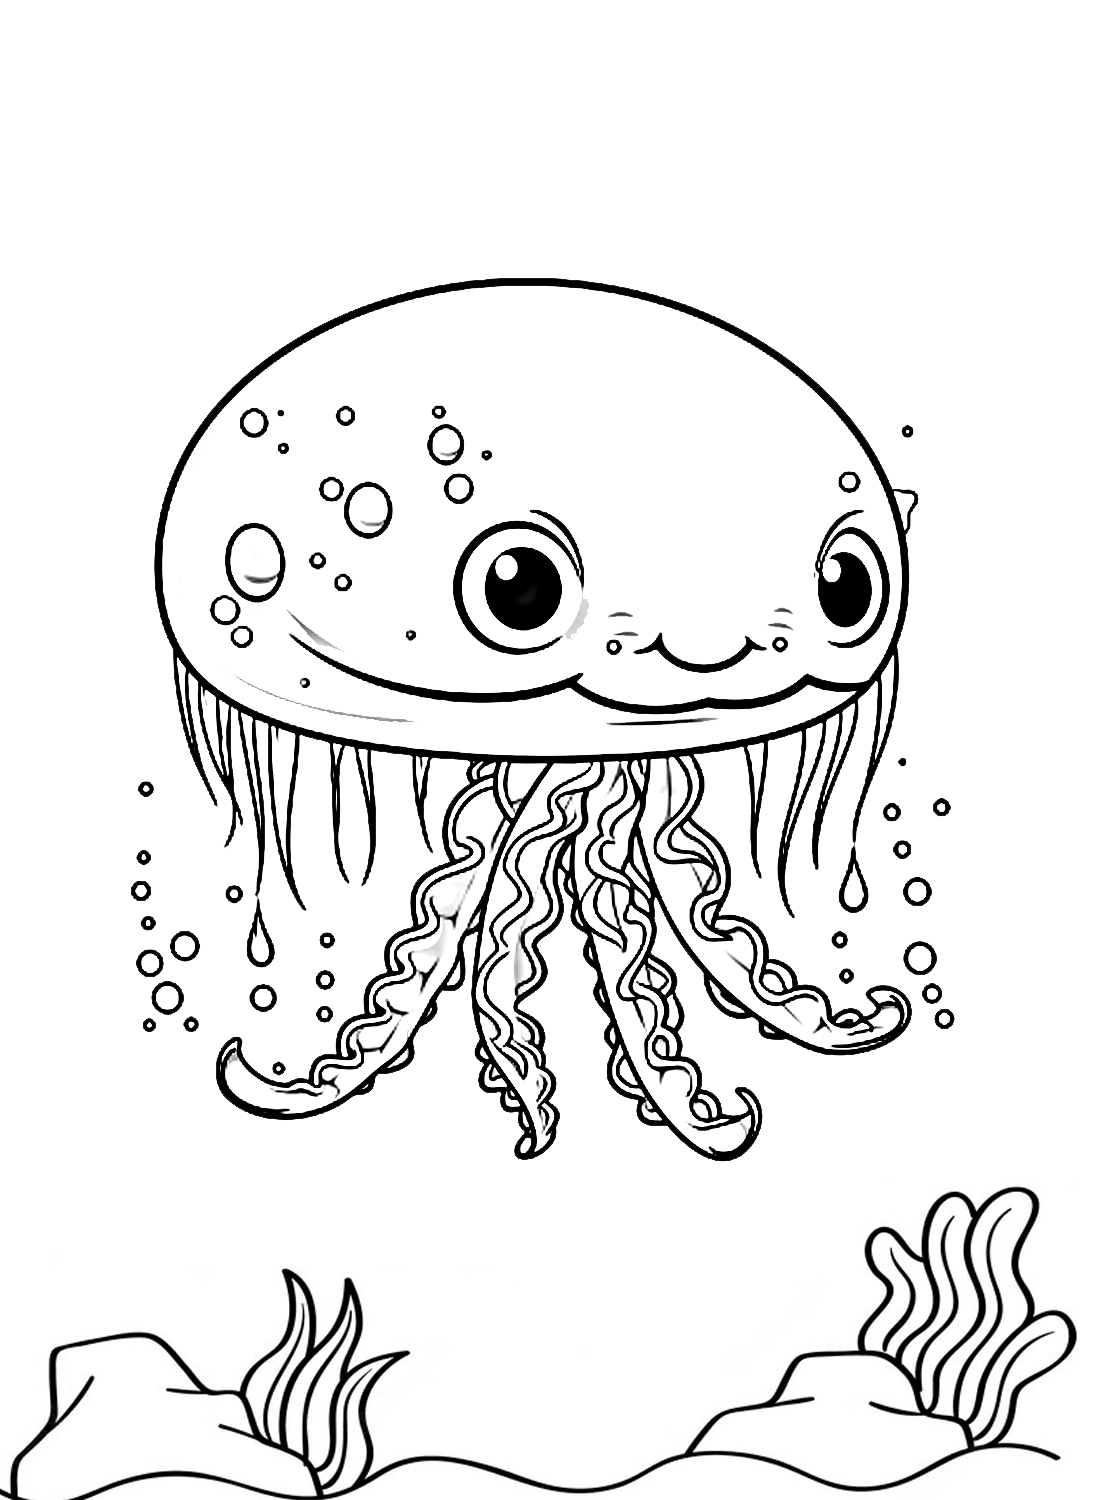 Una divertida medusa de Jellyfish